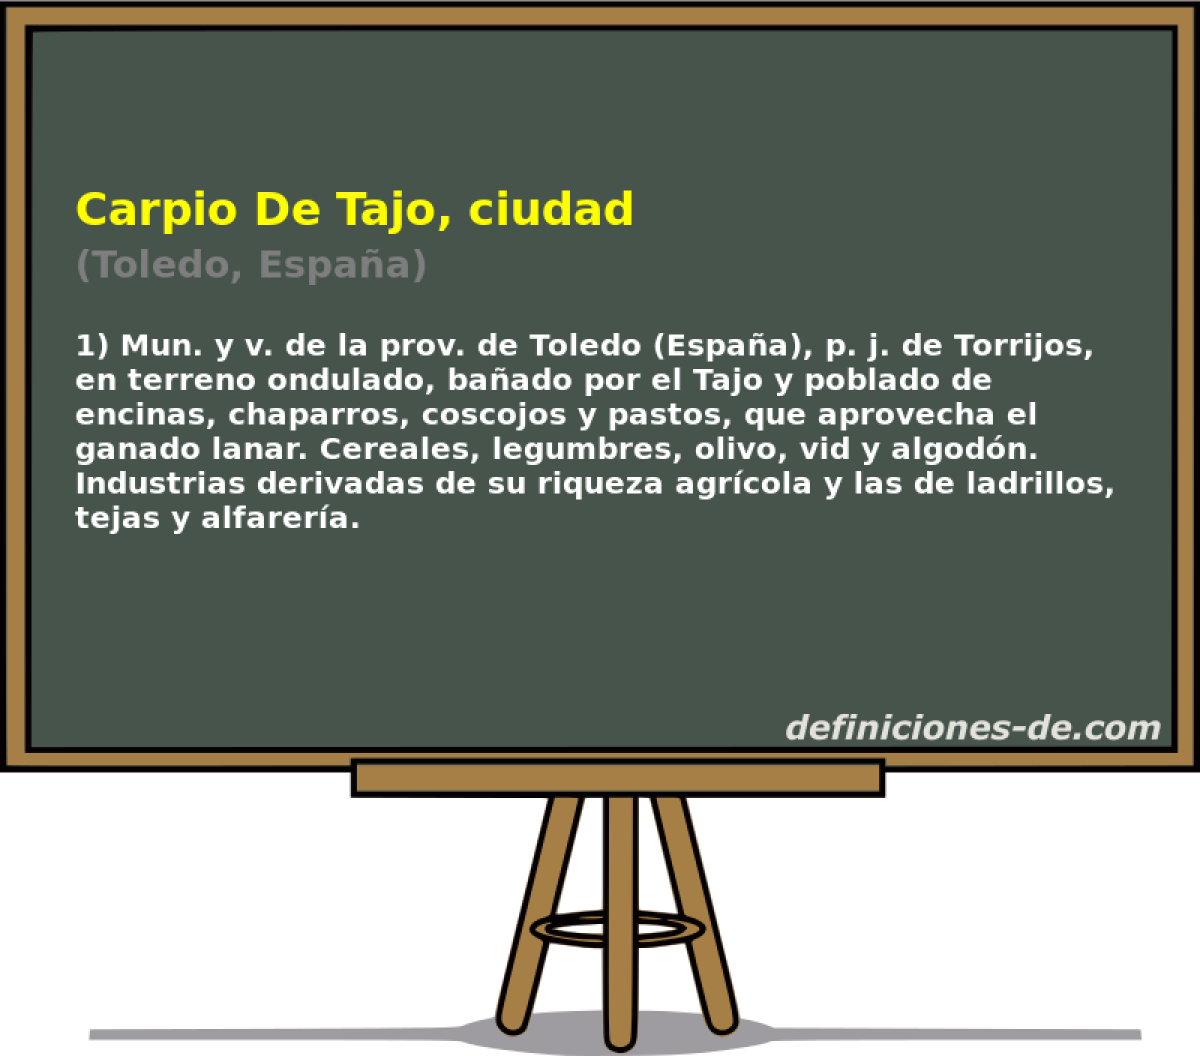 Carpio De Tajo, ciudad (Toledo, Espaa)